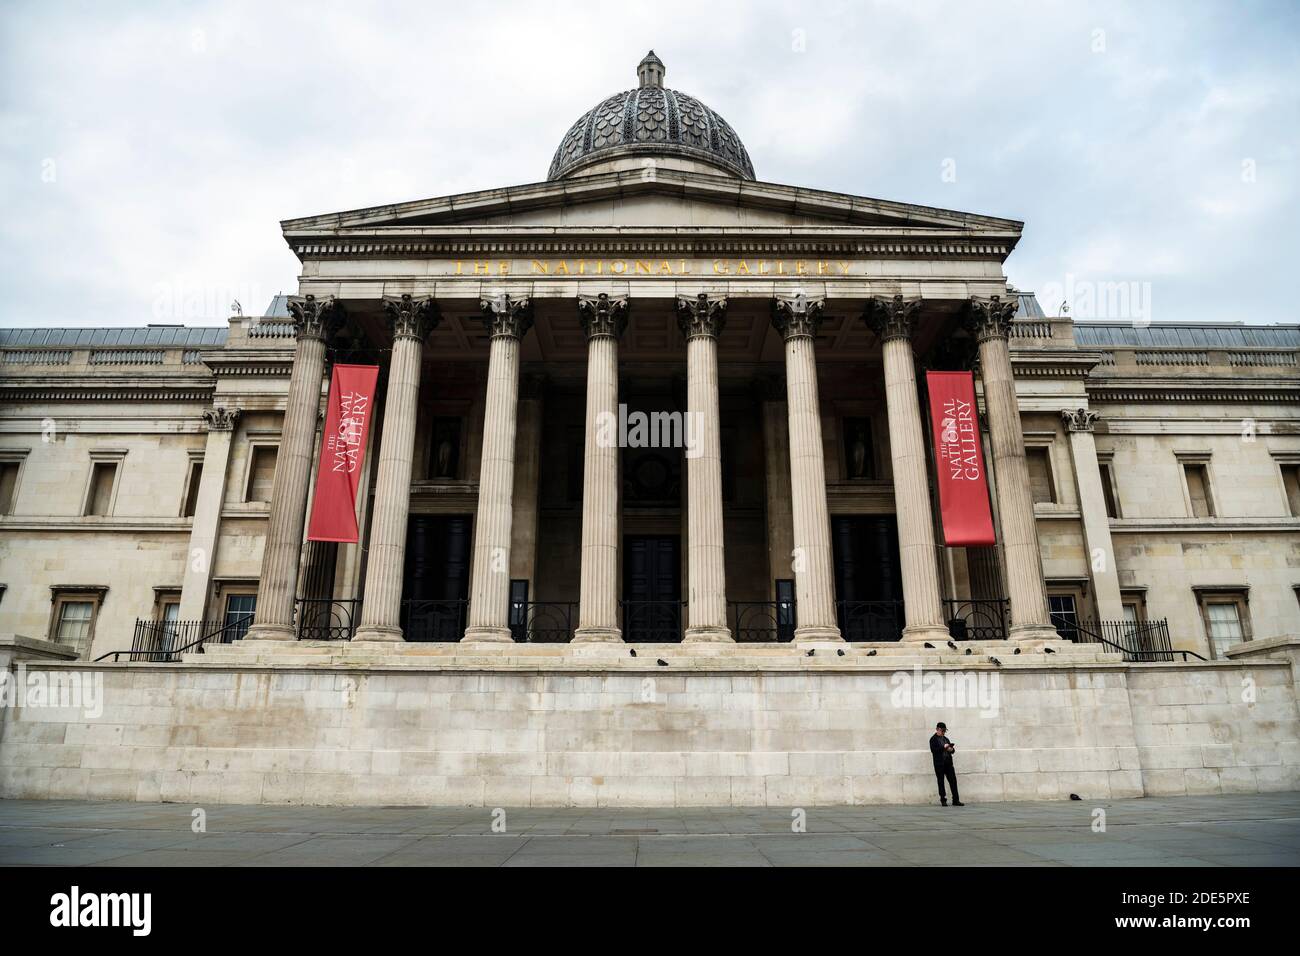 Ruhig und leer Central London in Covid-19 Coronavirus Lockdown mit einer Person zu Fuß in der National Gallery am Trafalgar Square, eine beliebte Touristenattraktion in England, Großbritannien Stockfoto